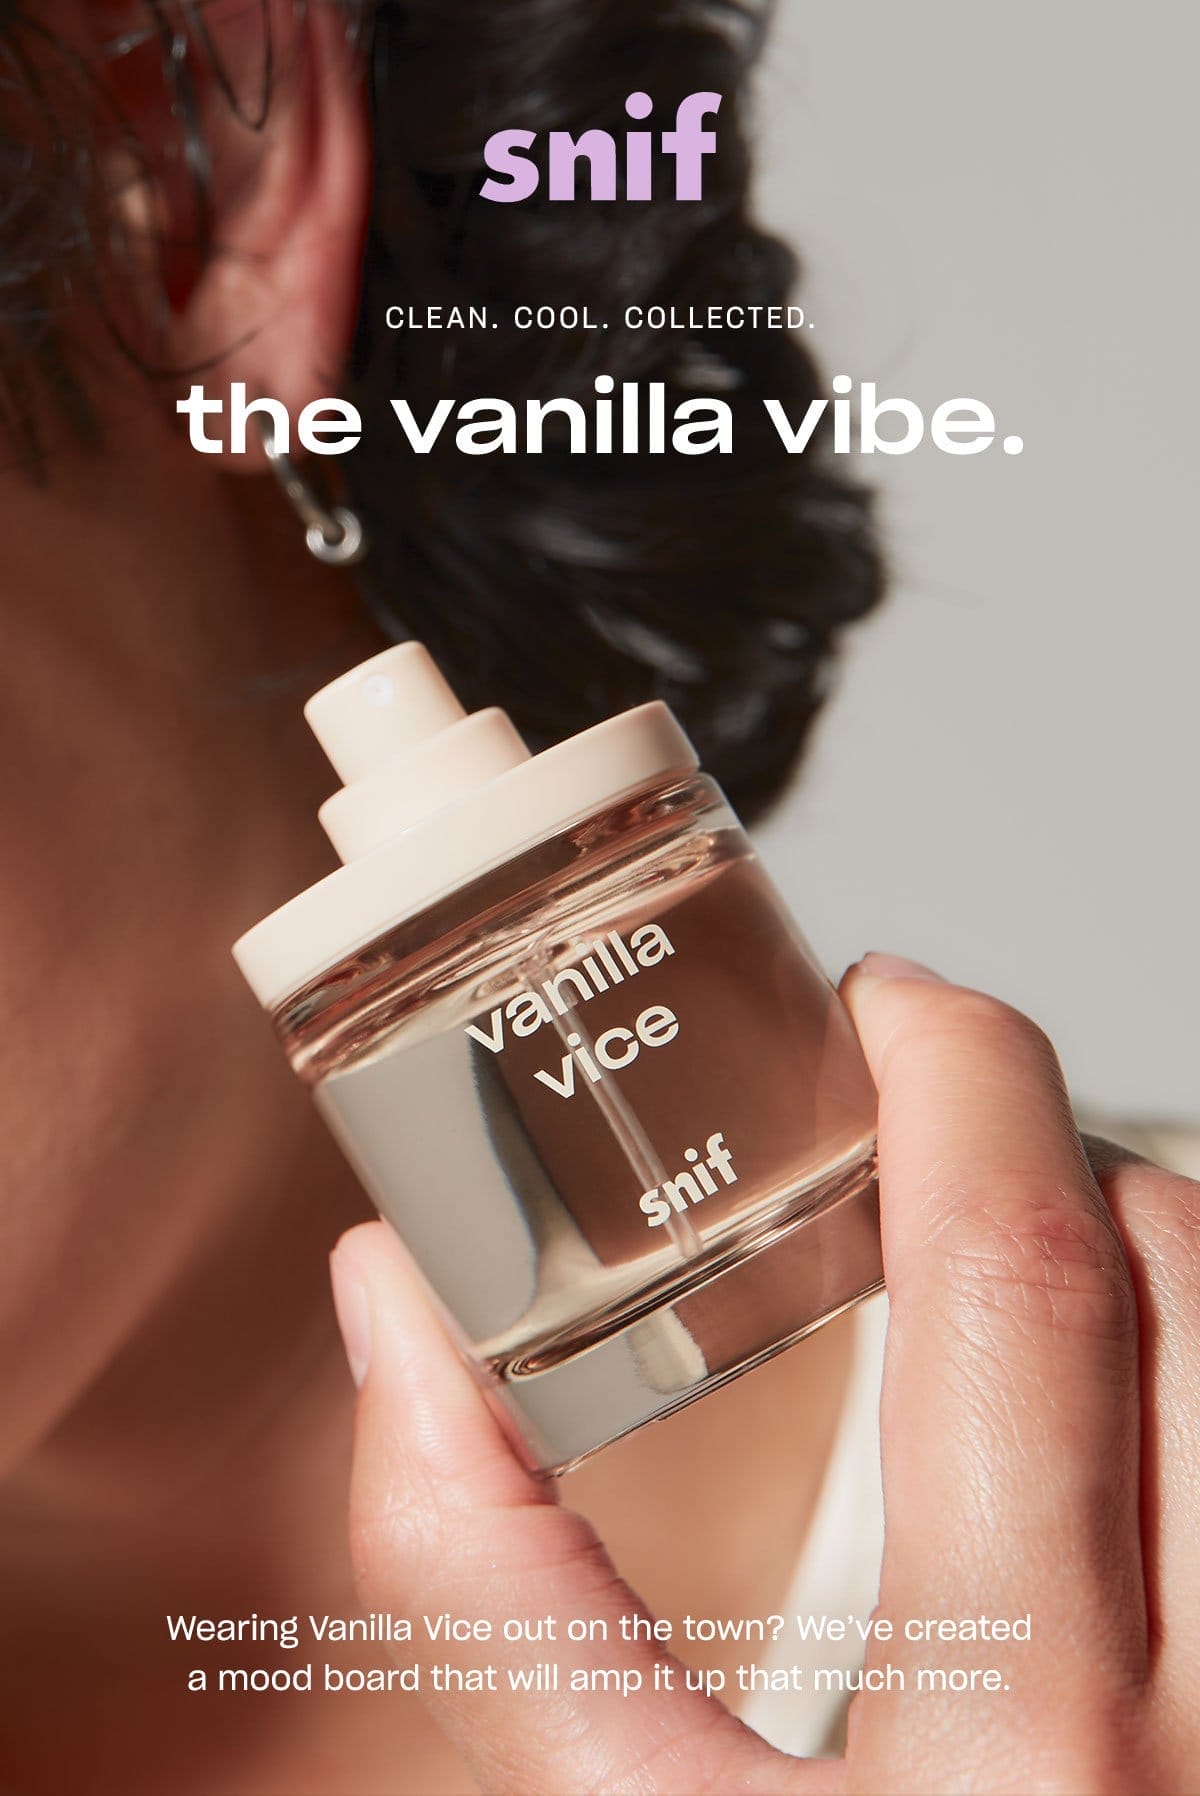 Shop Vanilla Vice. ↗